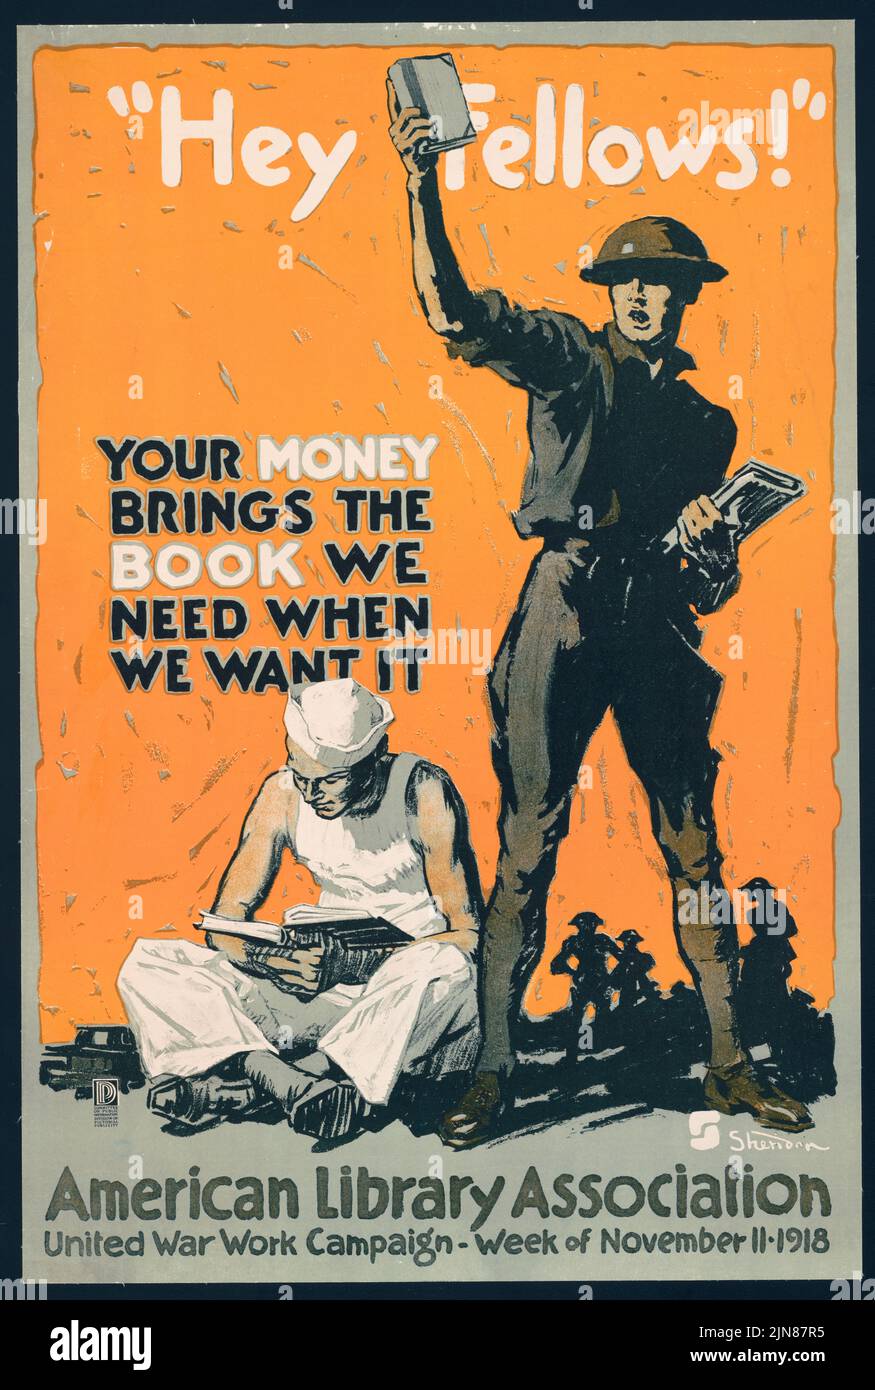 «¡Hola, compañeros!» Su dinero trae el libro We We When We Want It, American Library Association, United War Work Campaign, 11 de noviembre (1918) Afiche de la era de la Primera Guerra Mundial de John Sheridan Foto de stock